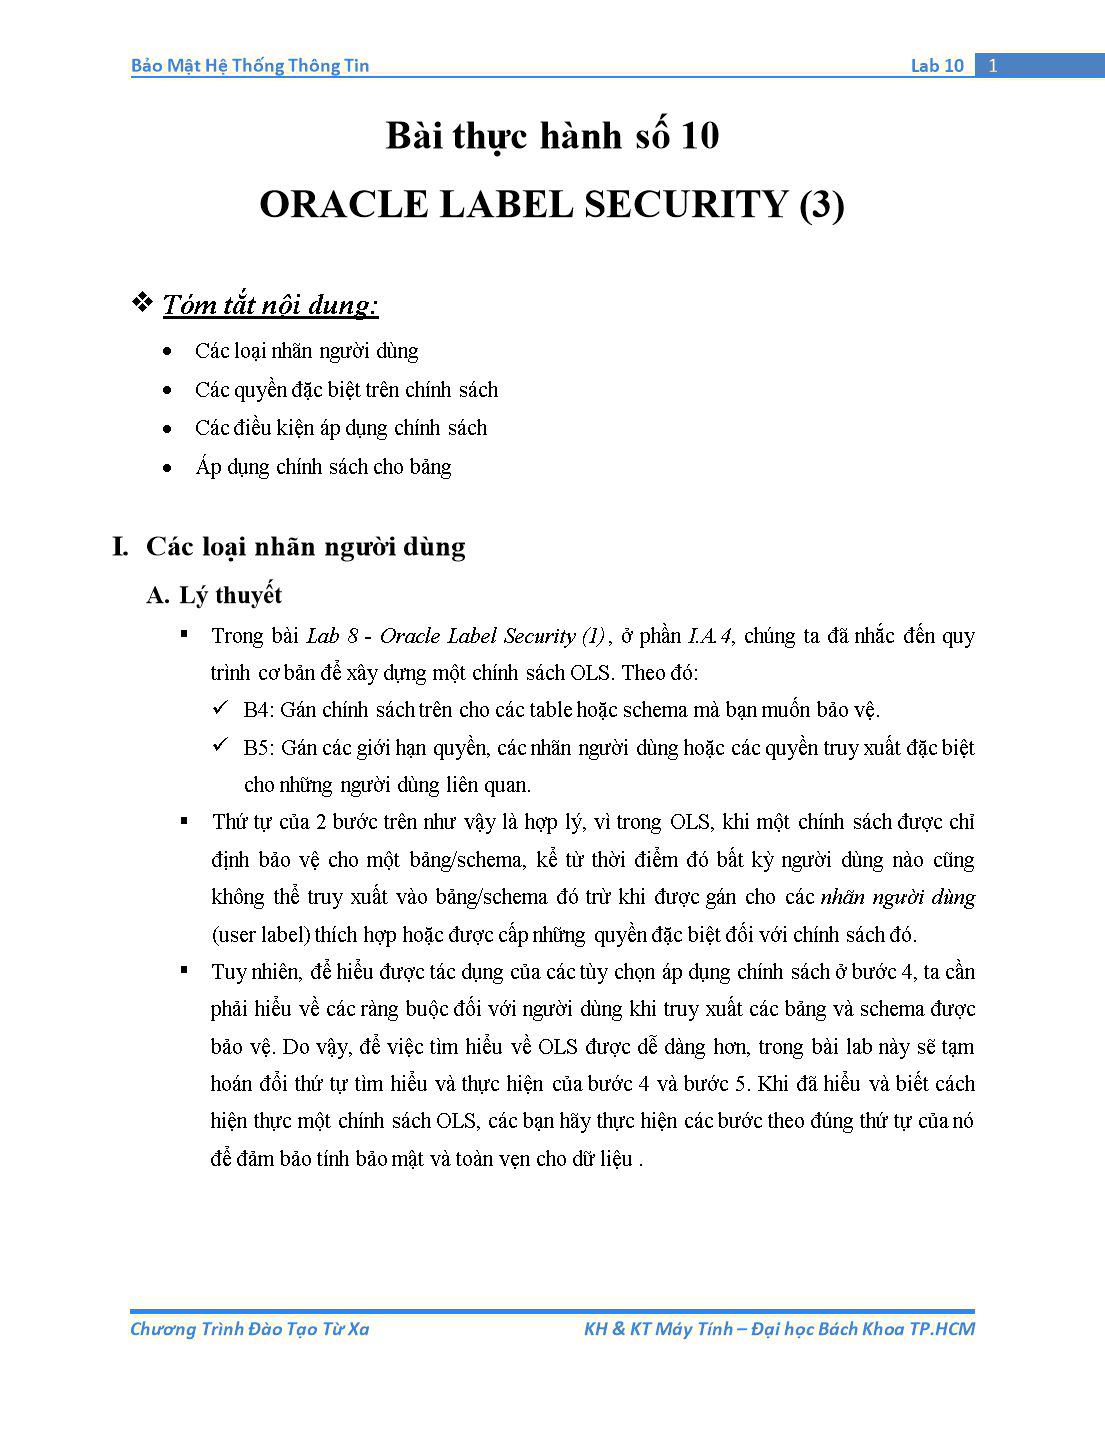 Tài liệu thực hành Bảo mật hệ thống thông tin - Bài thực hành số 10: Oracle Label Security (Phần 3) trang 1